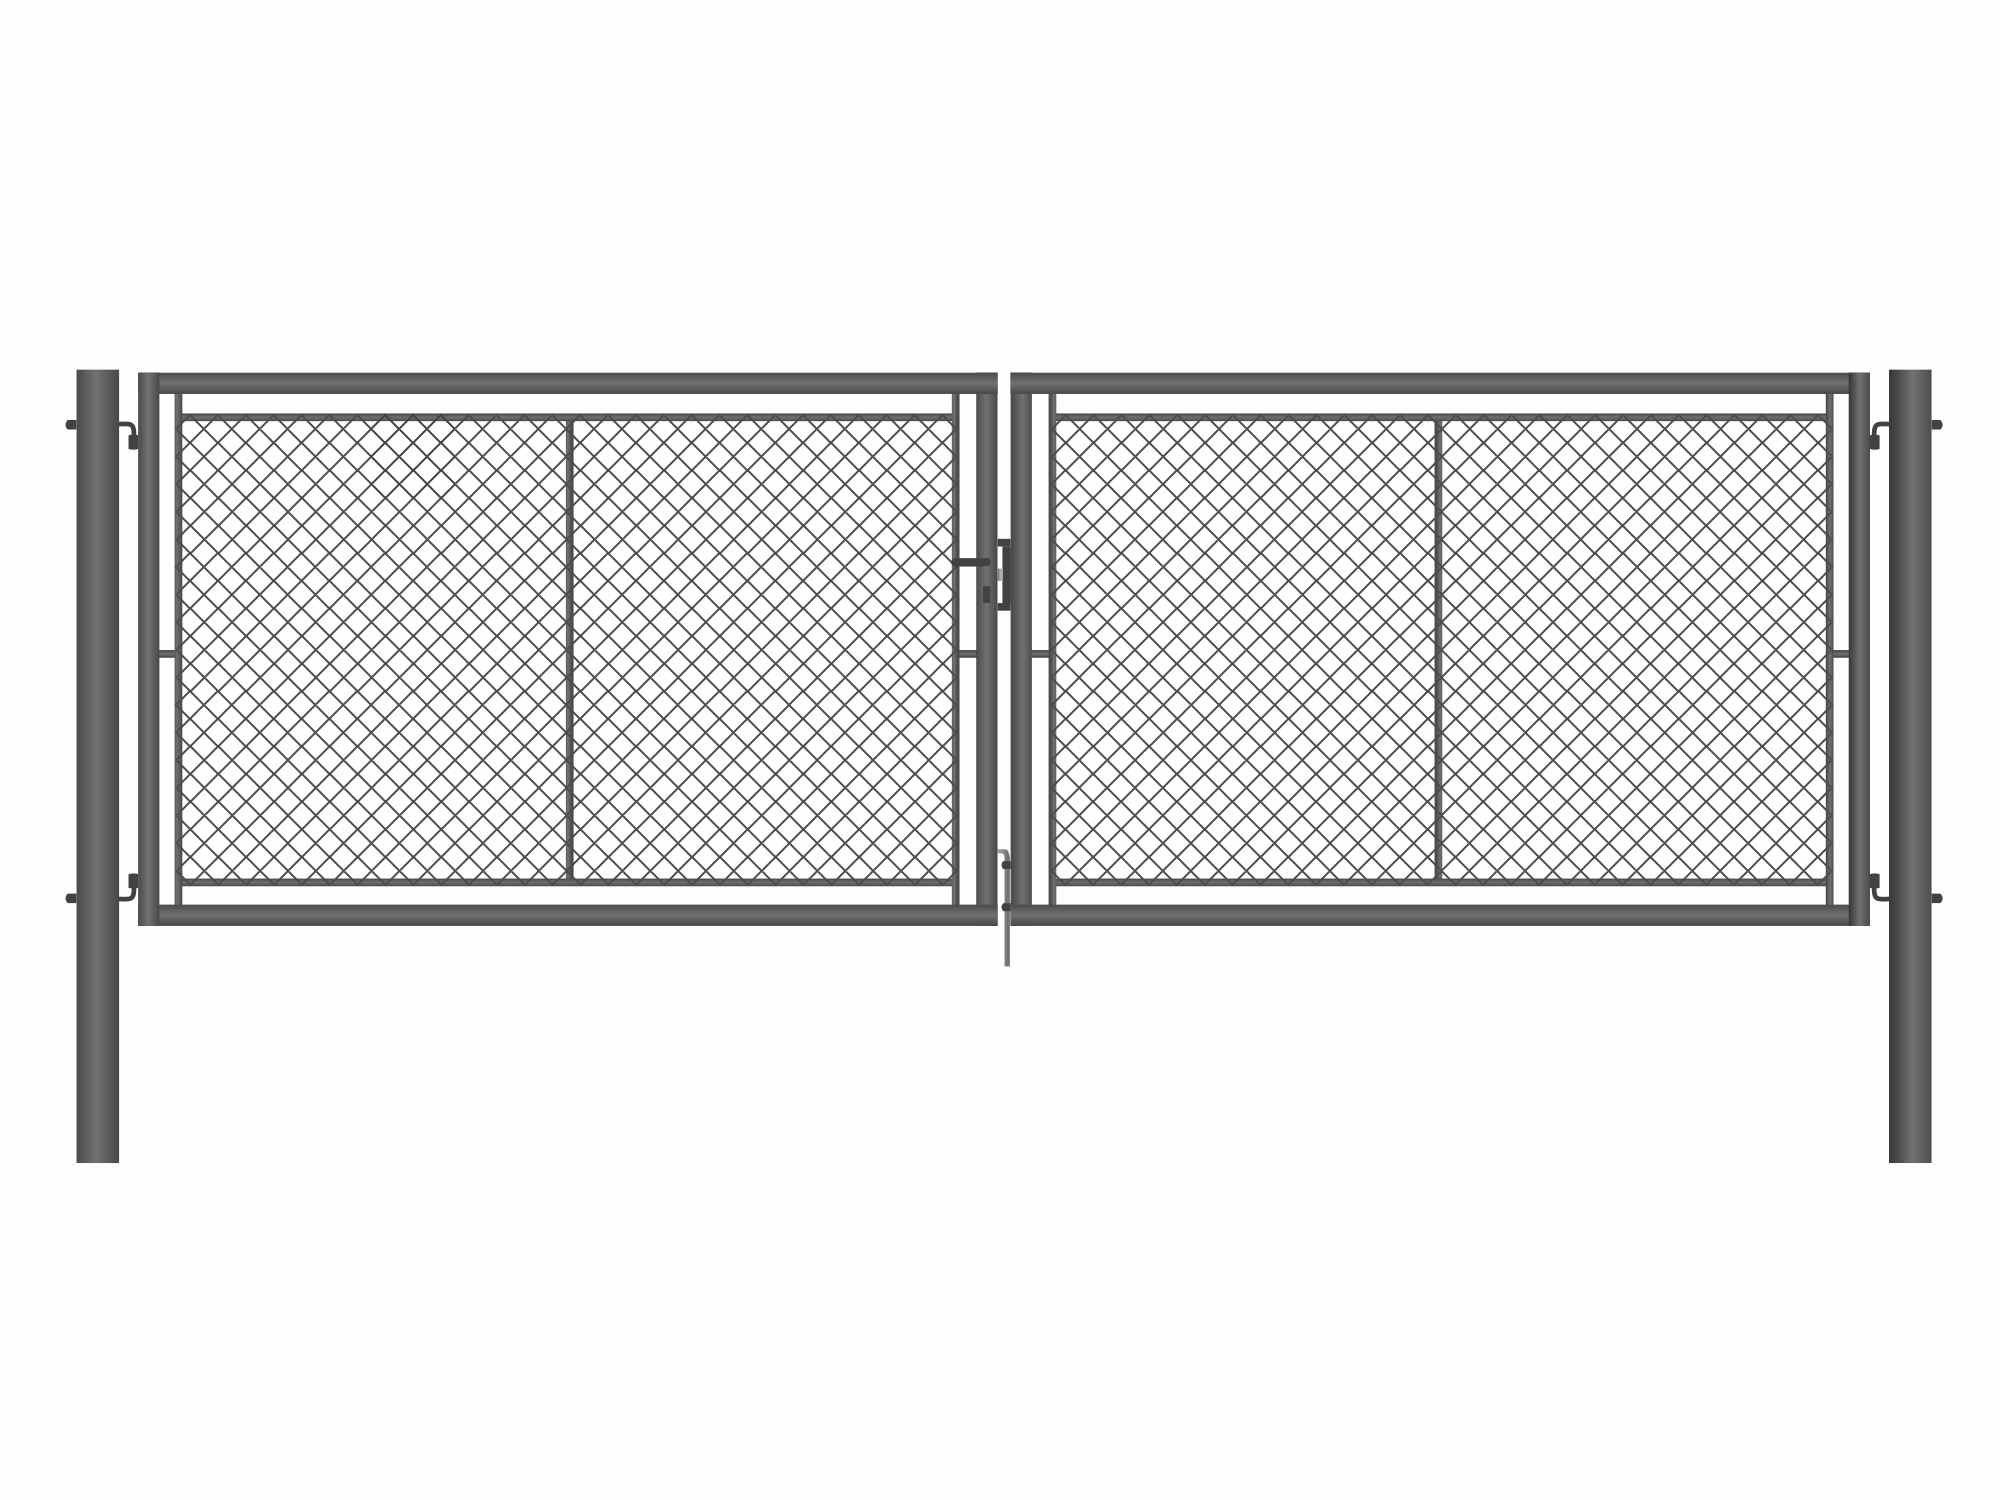 Brána zahradní dvoukřídlá antracit, výška 100 x 500 cm, FAB, s výplní klasického pletiva